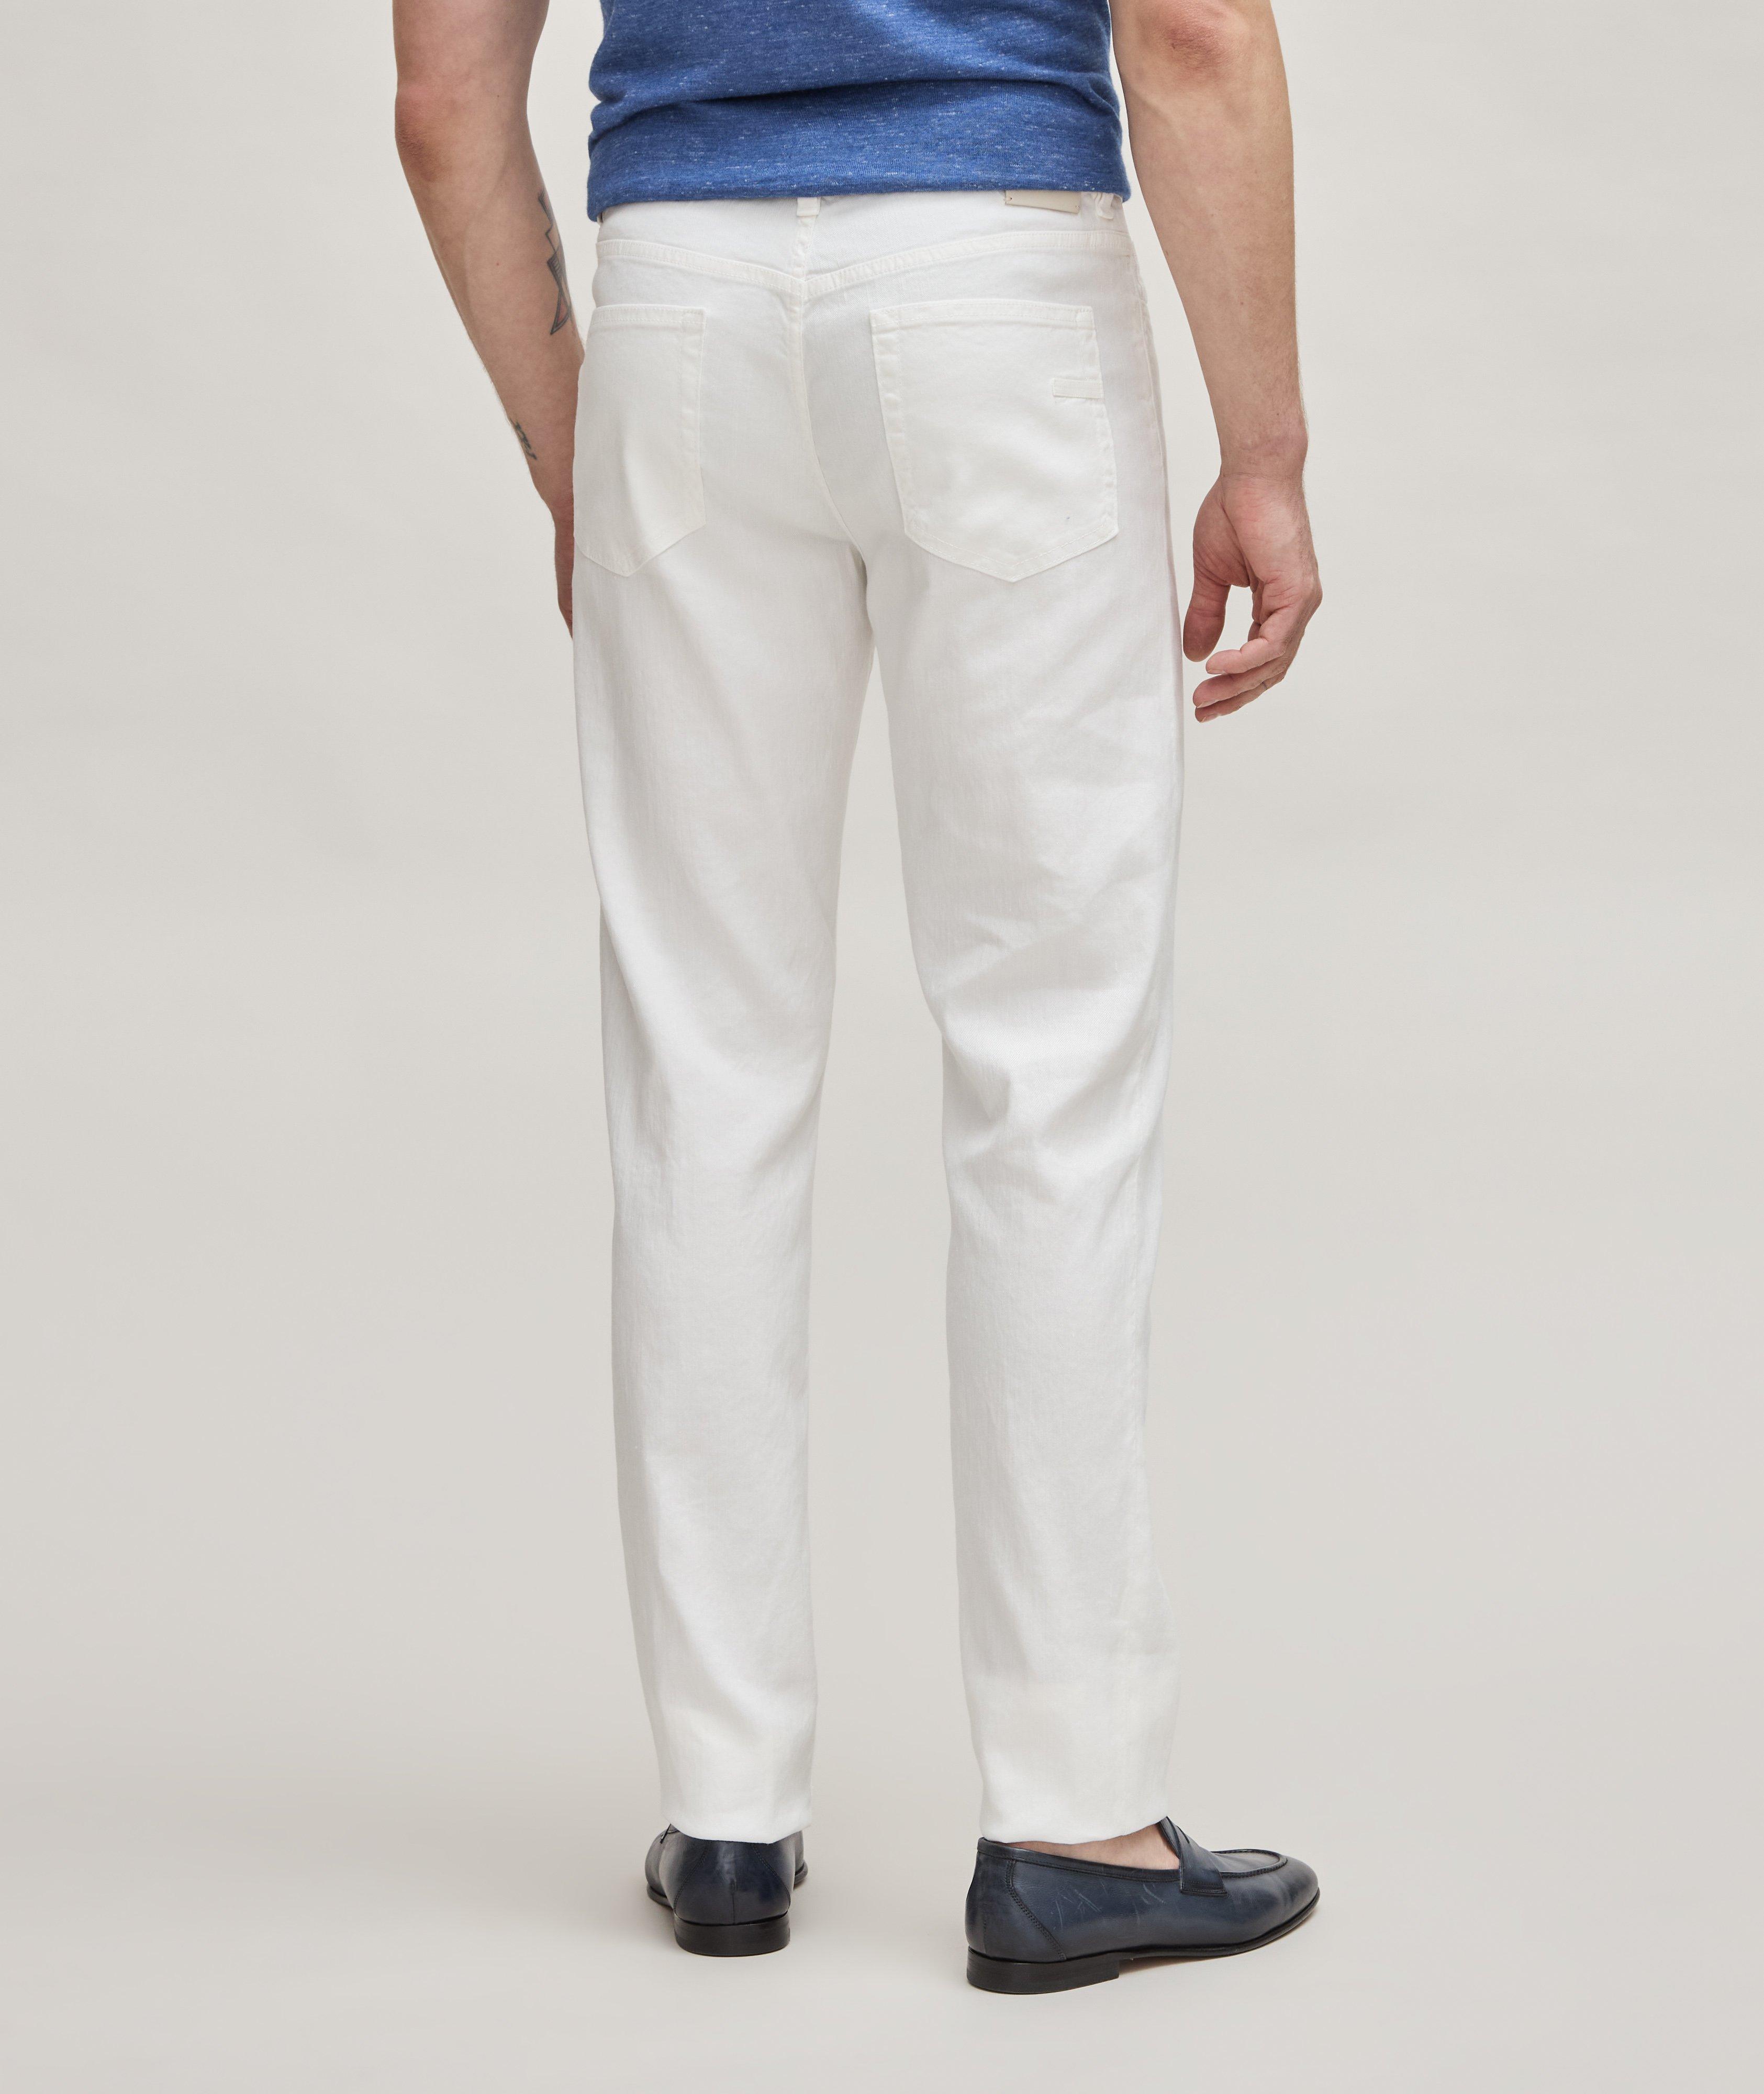 Stretch-Linen & Cotton Roccia Jeans image 2